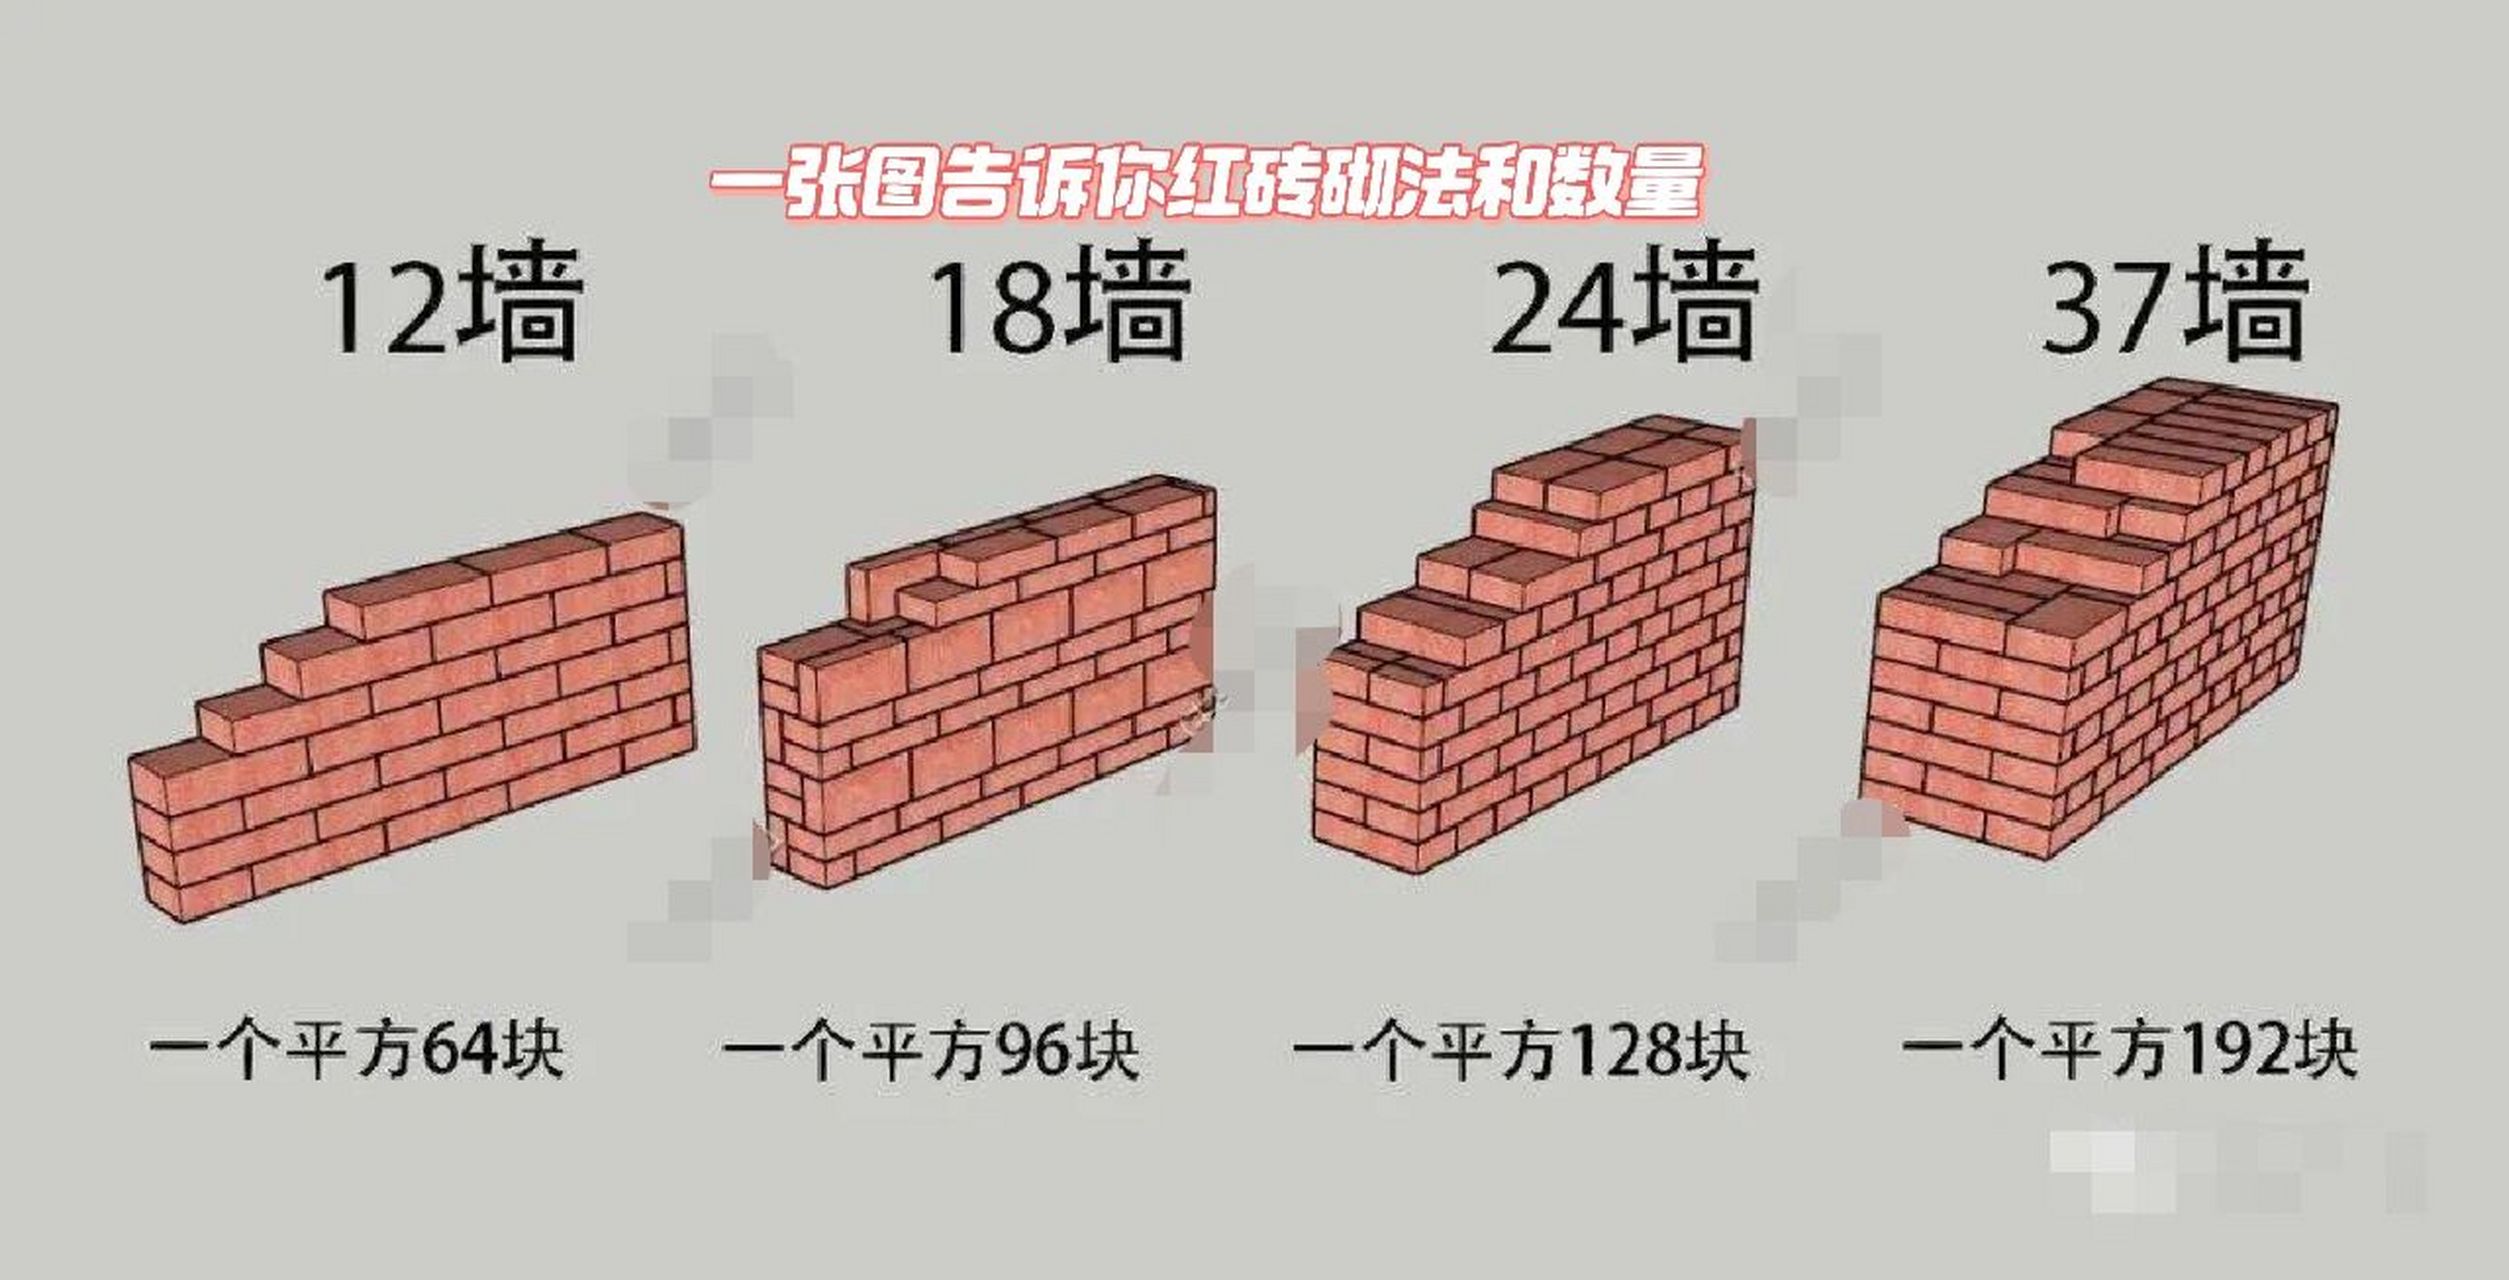 红砖墙砌法和数量 好多小伙伴不知道红砖什么是12墙什么是24墙